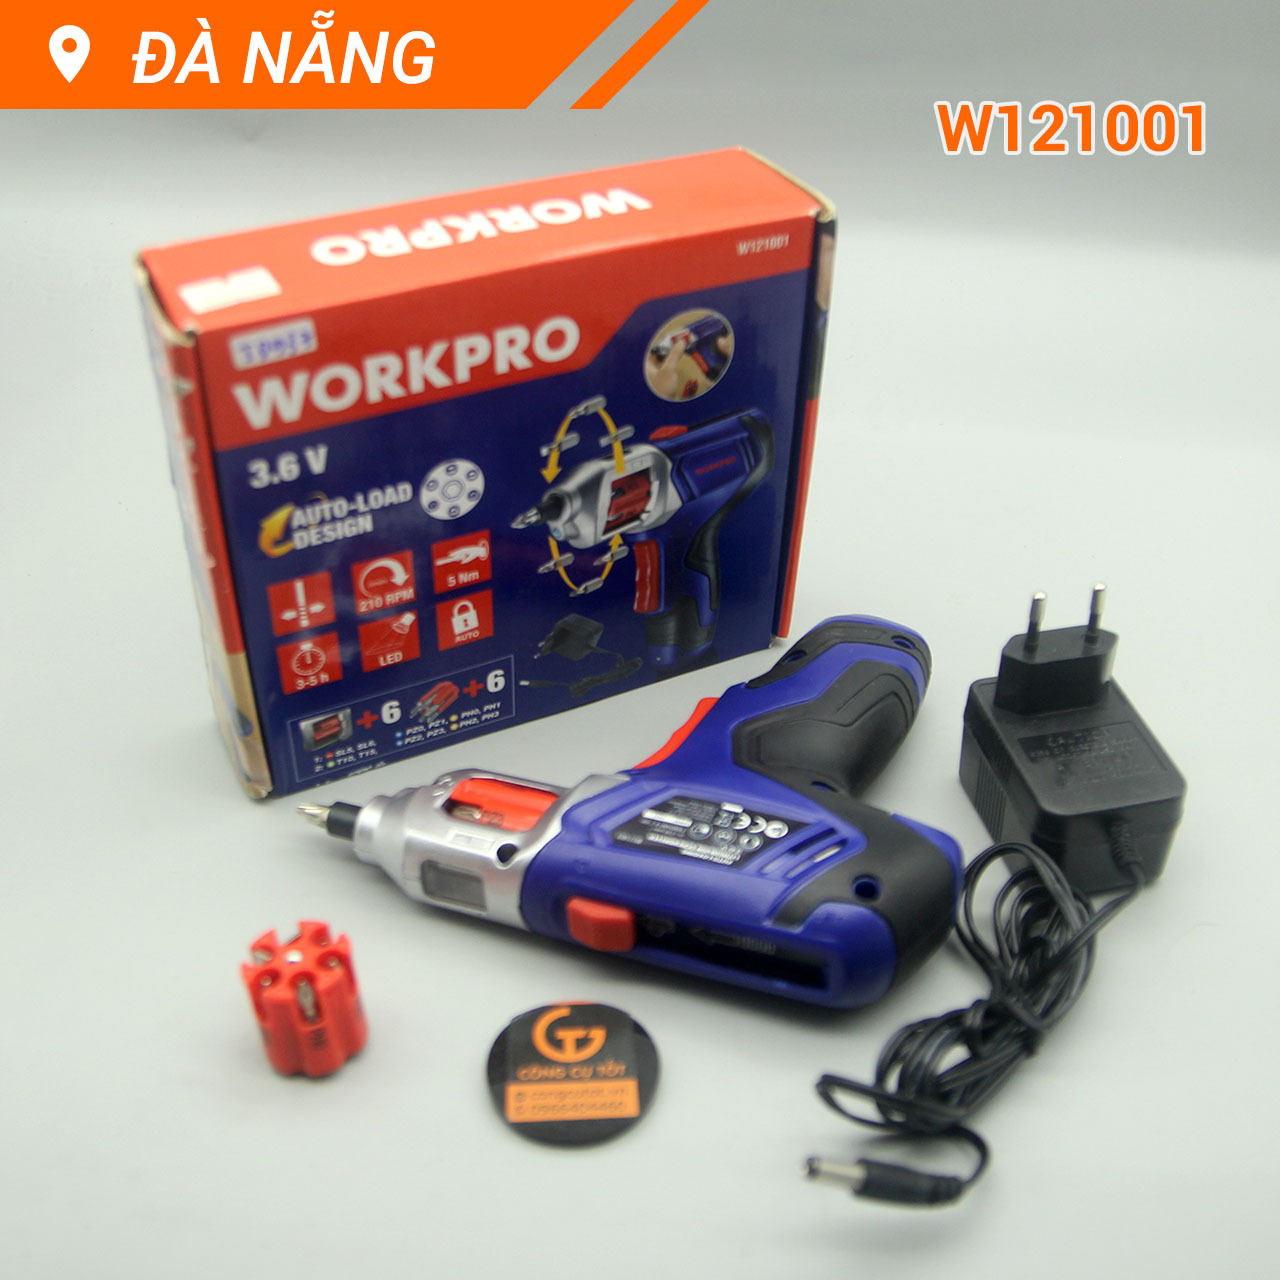 Dụng cụ bắt vít sạc điện Workpro W121001